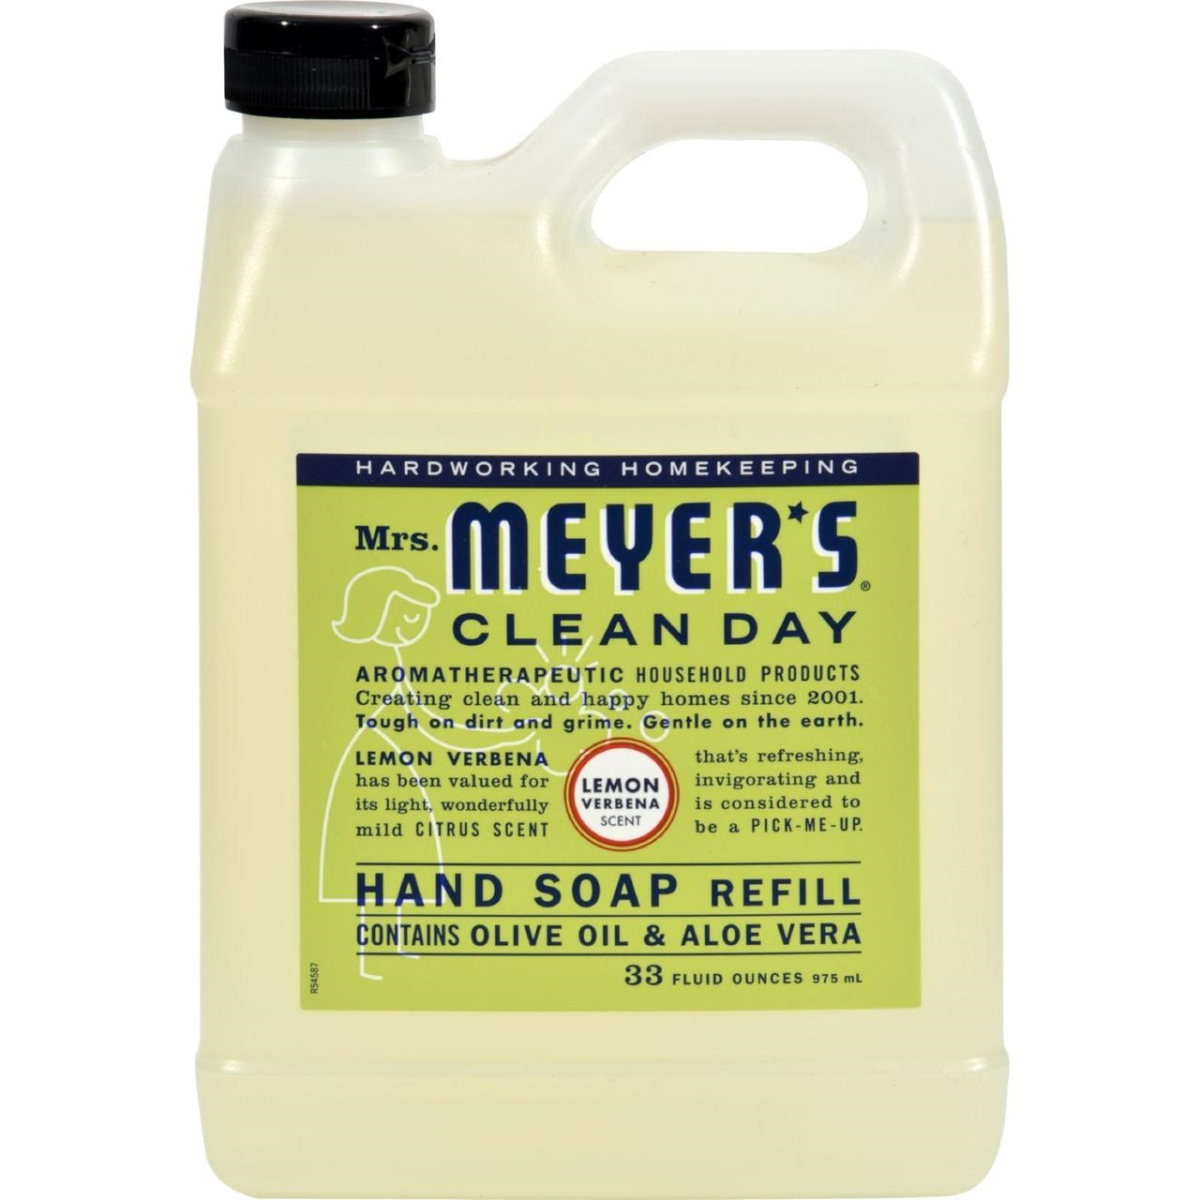 Hg1237783 33 Fl Oz Liquid Hand Soap Refill, Lemon Verbena